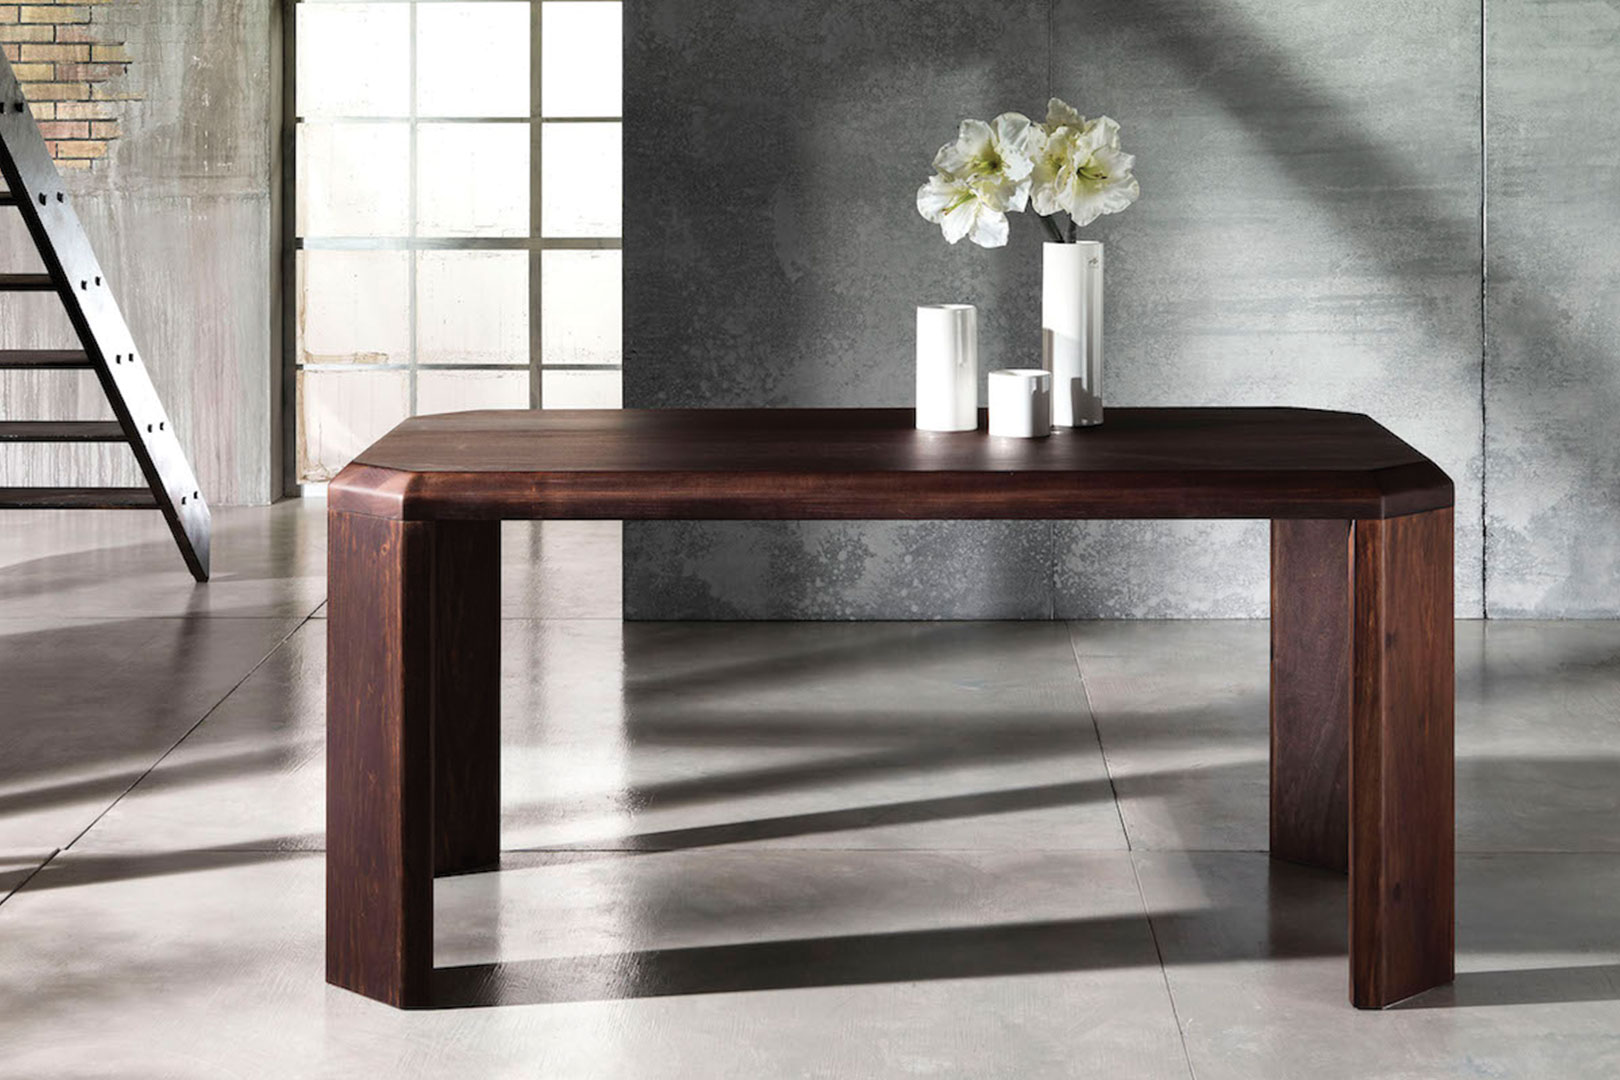 Atiki table di Profili Design. Tavolo di design realizzato in noce massiccio. Design italiano.